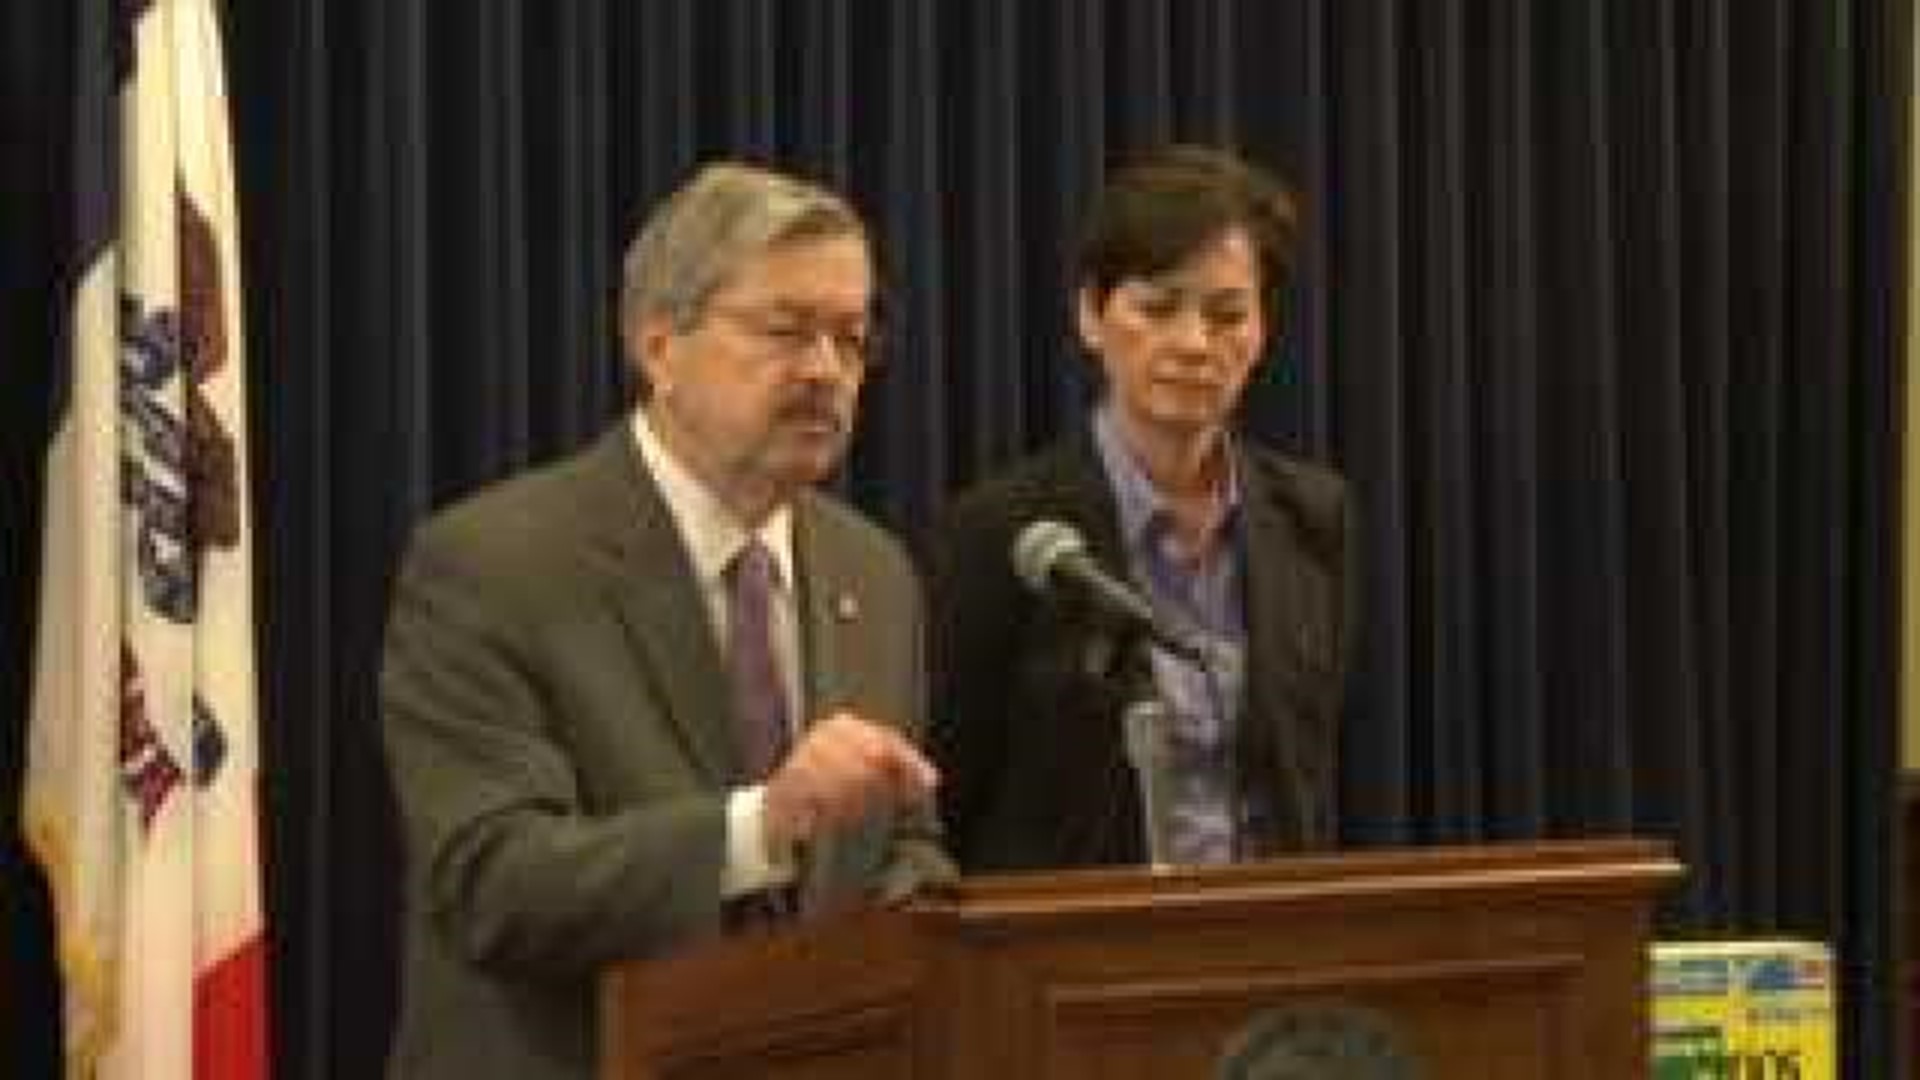 Iowa Gov. Branstad calls for investigation in ‘pink slime’ controversy